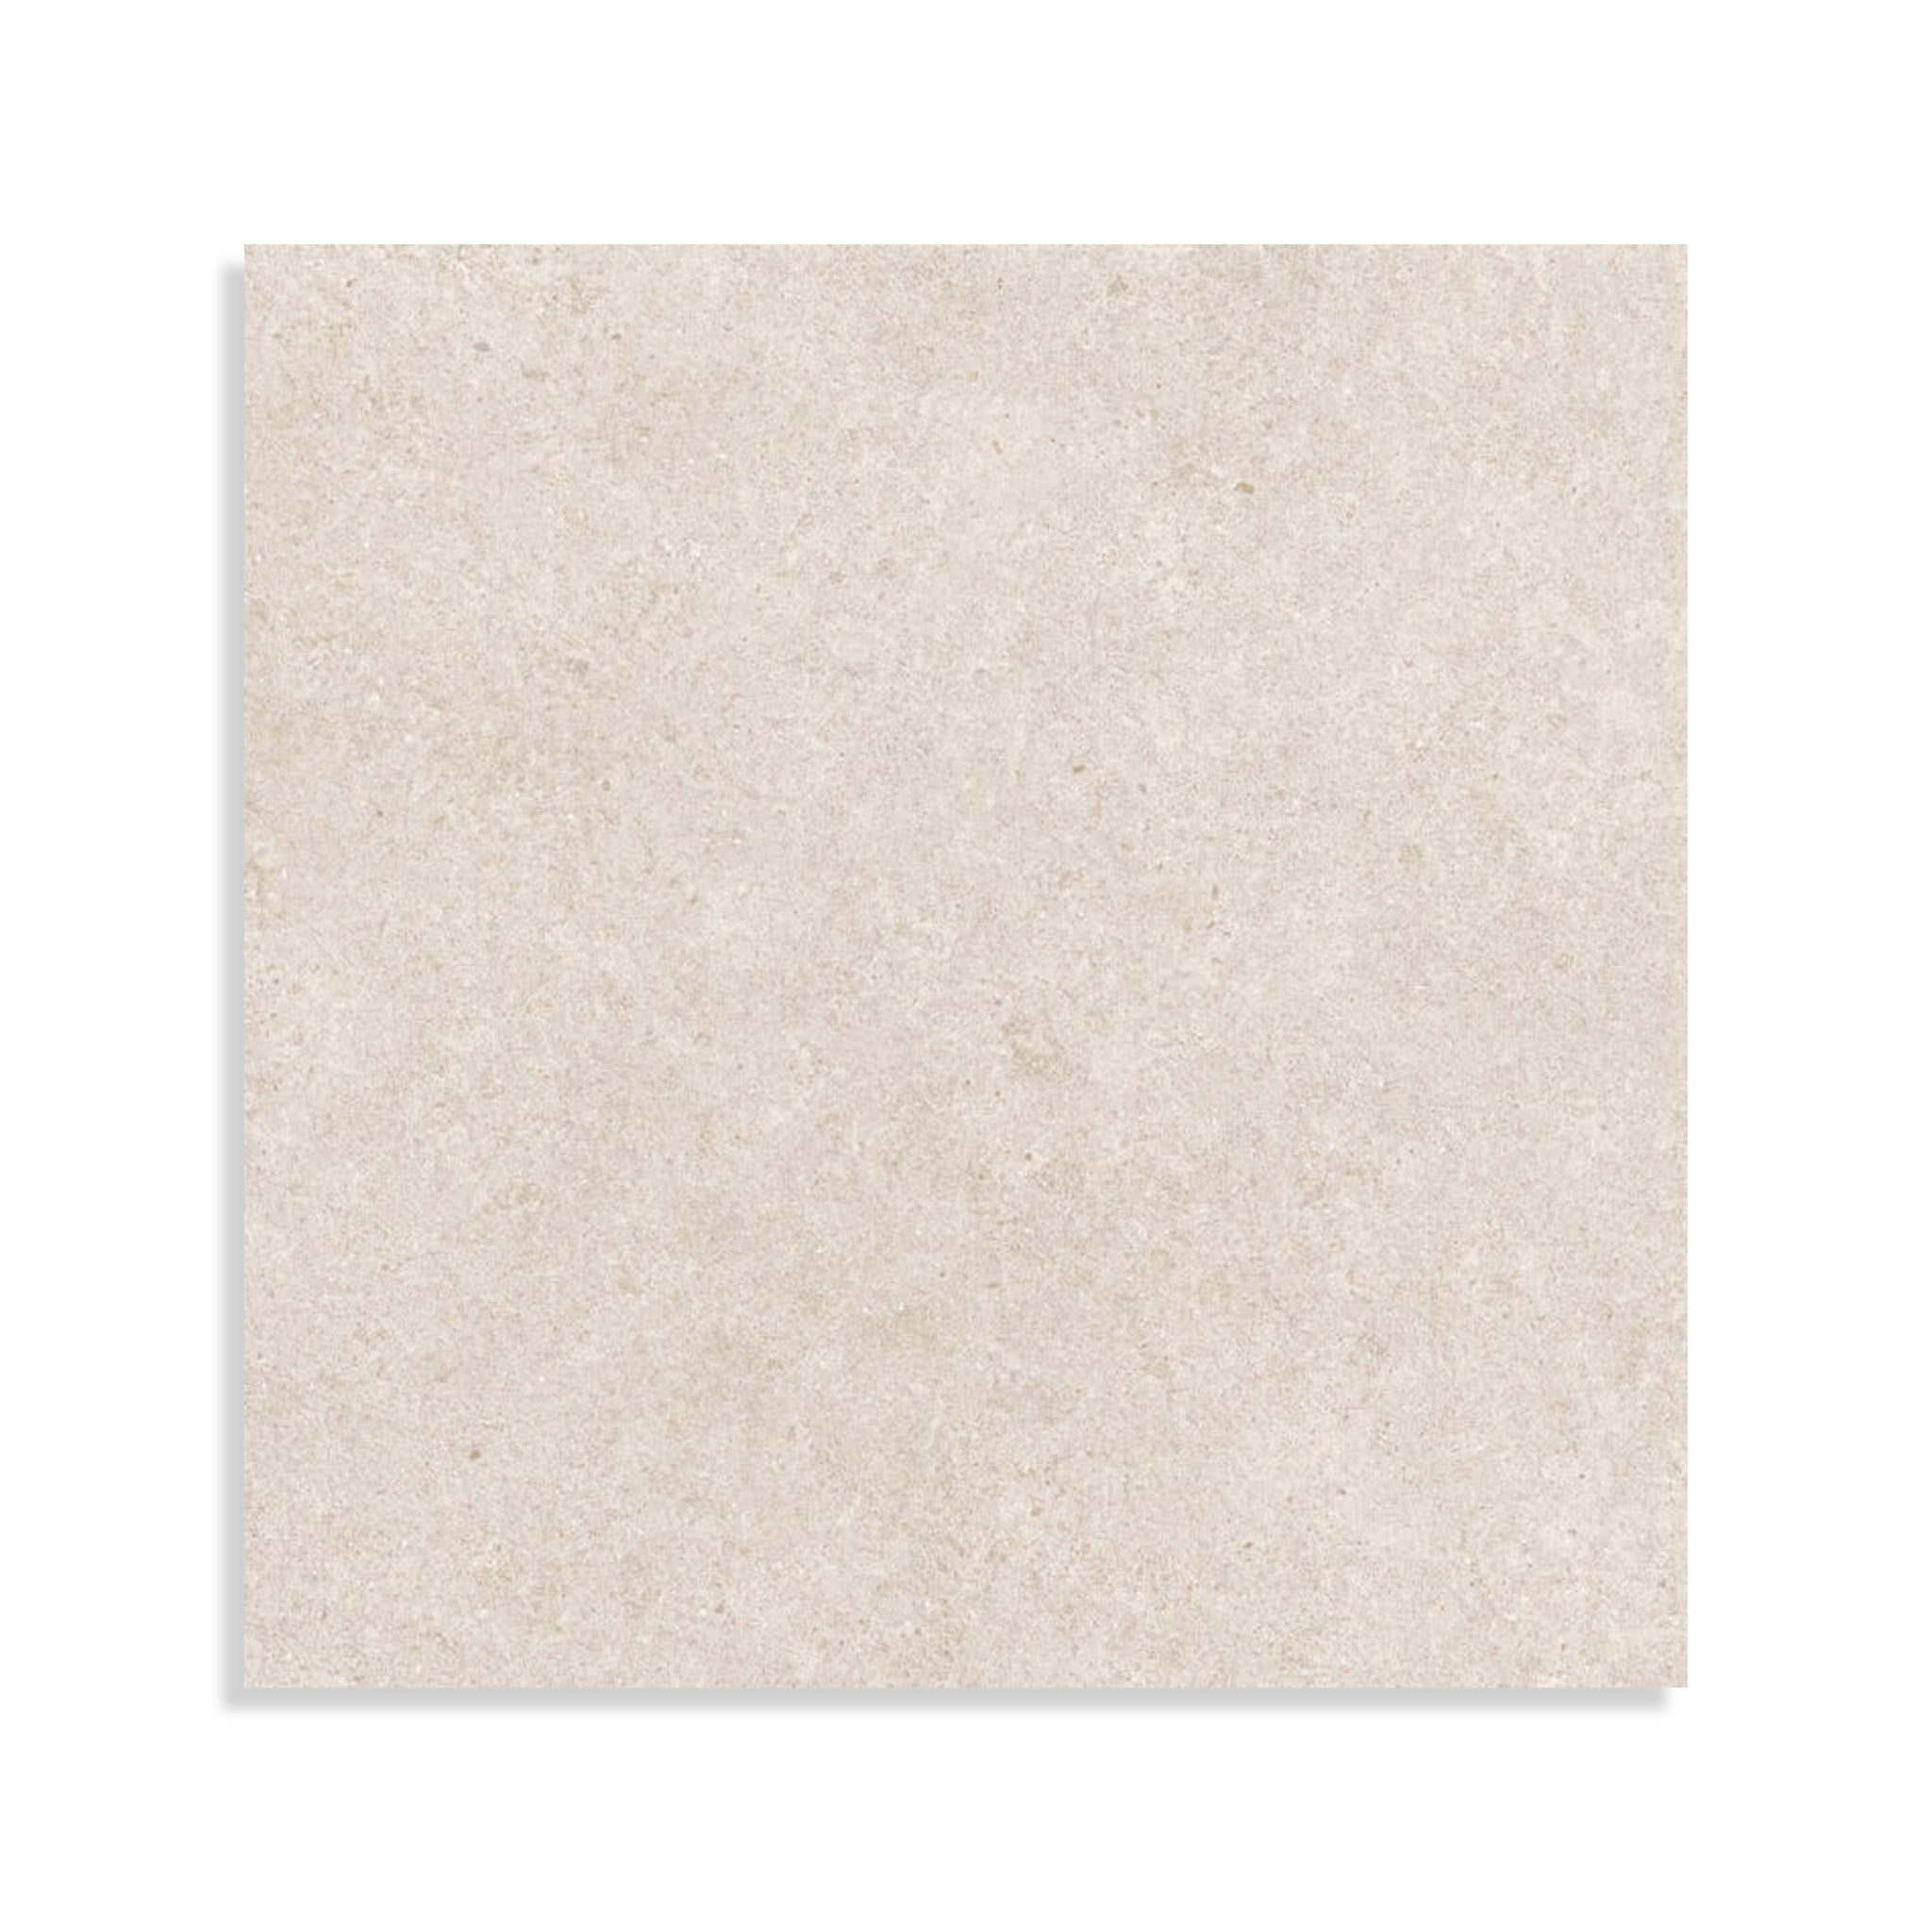 Minoli - Boost Stone White Matt, 120 x 120cm (BST1270) - Tiles &amp; Stone To You